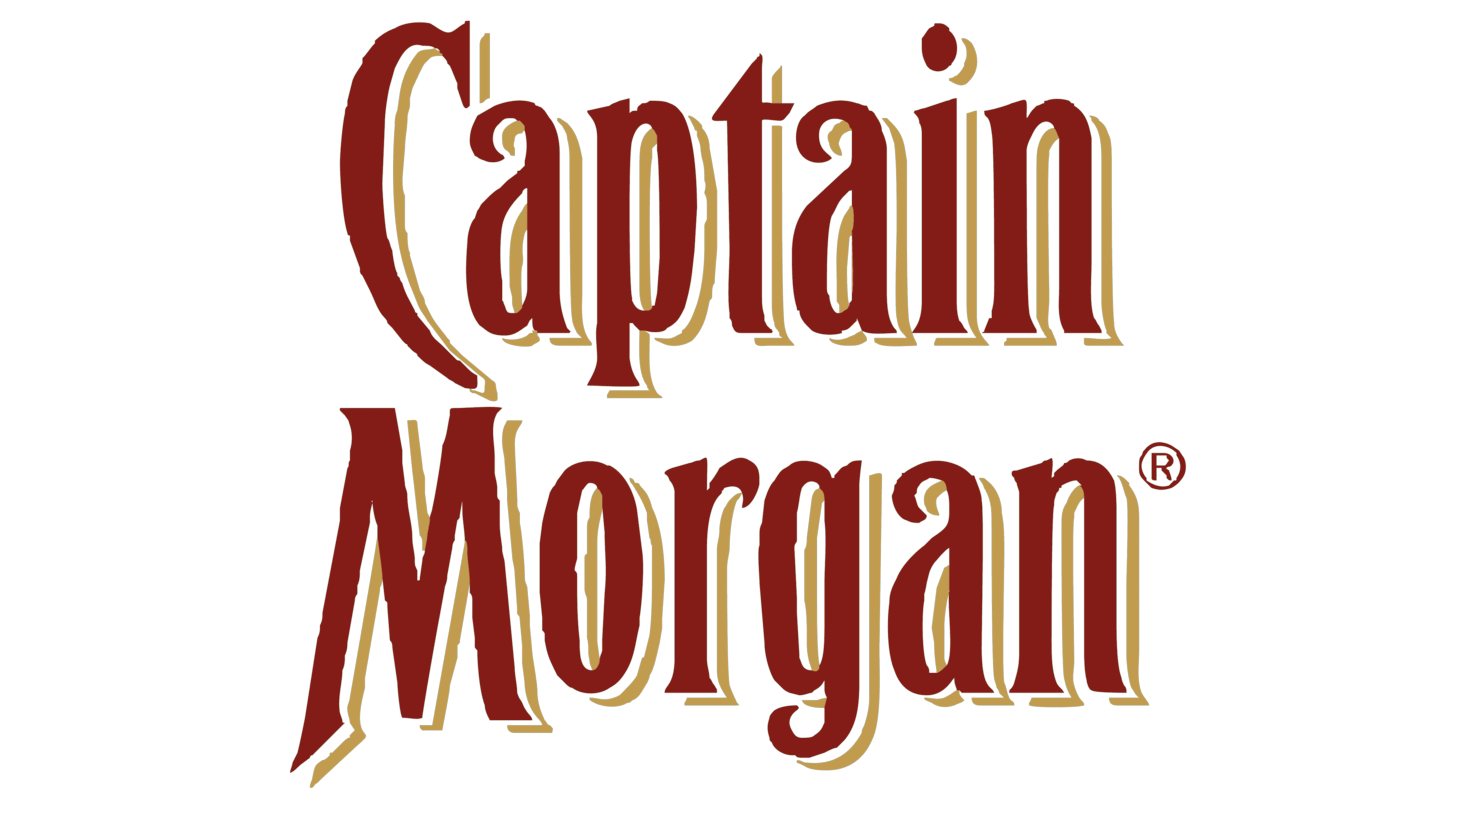 Captain morgan logo